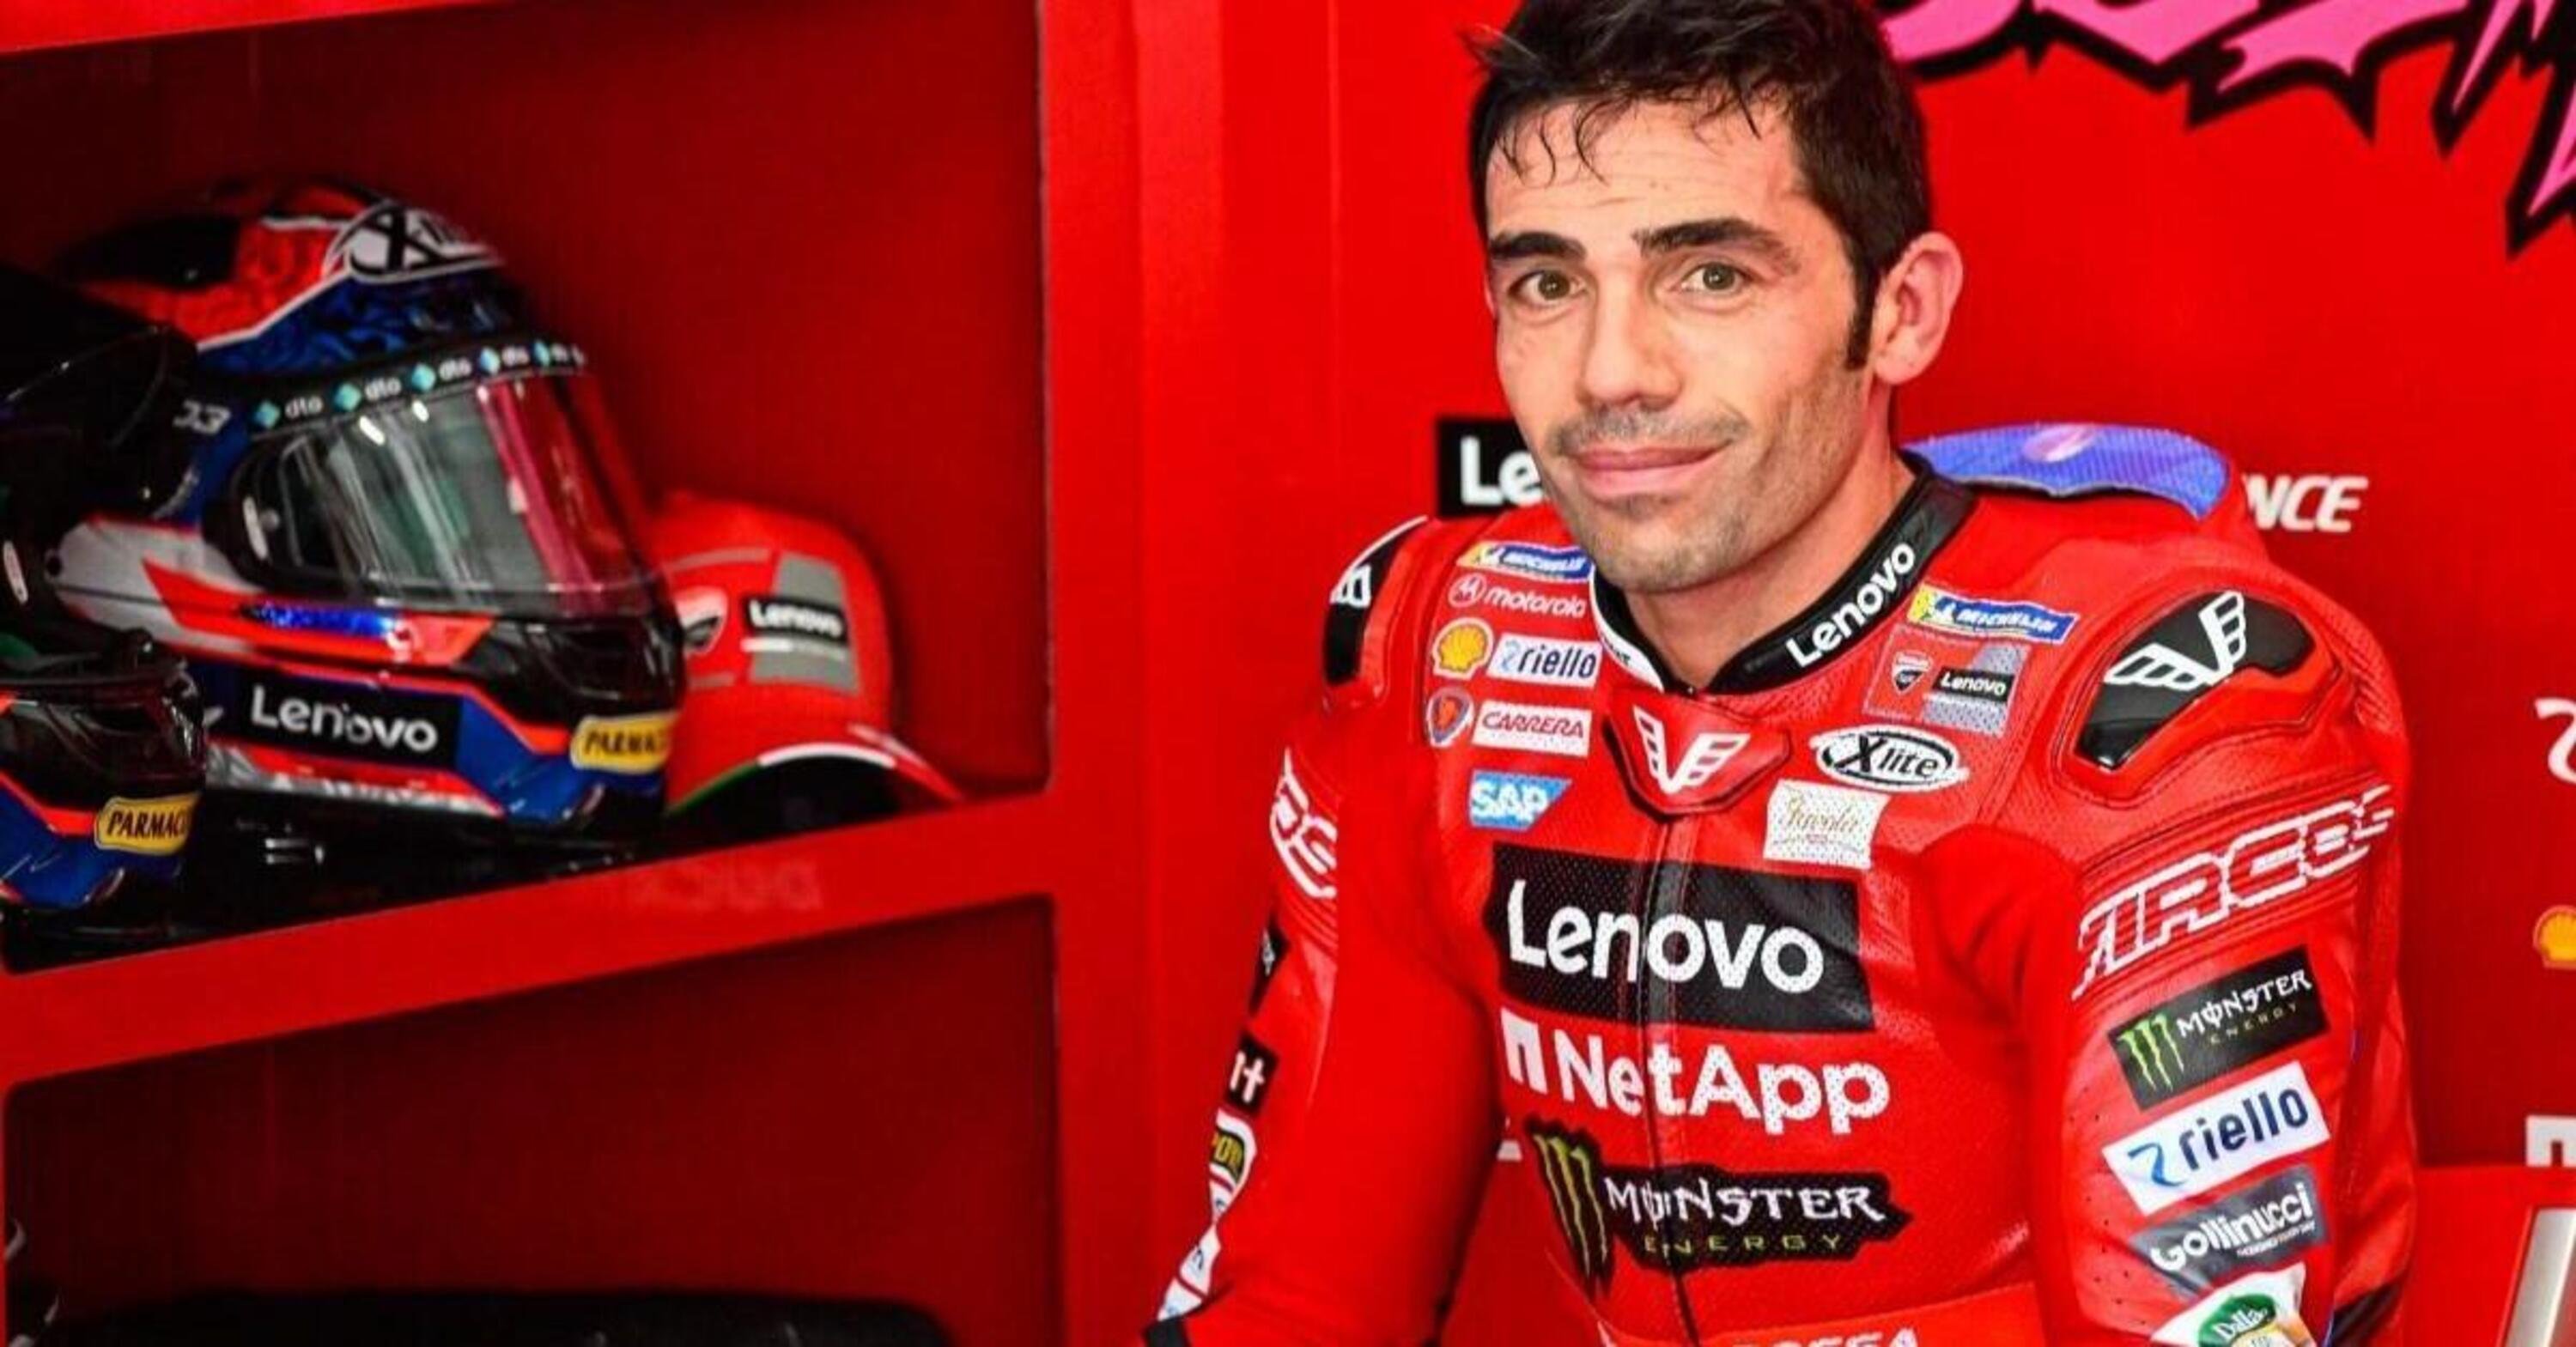 MotoGP 2023. Secondo Michele Pirro la Ducati avrebbe potuto vincere due mondiali in pi&ugrave;: &ldquo;Dal 2017 &egrave; la moto pi&ugrave; completa...&rdquo;